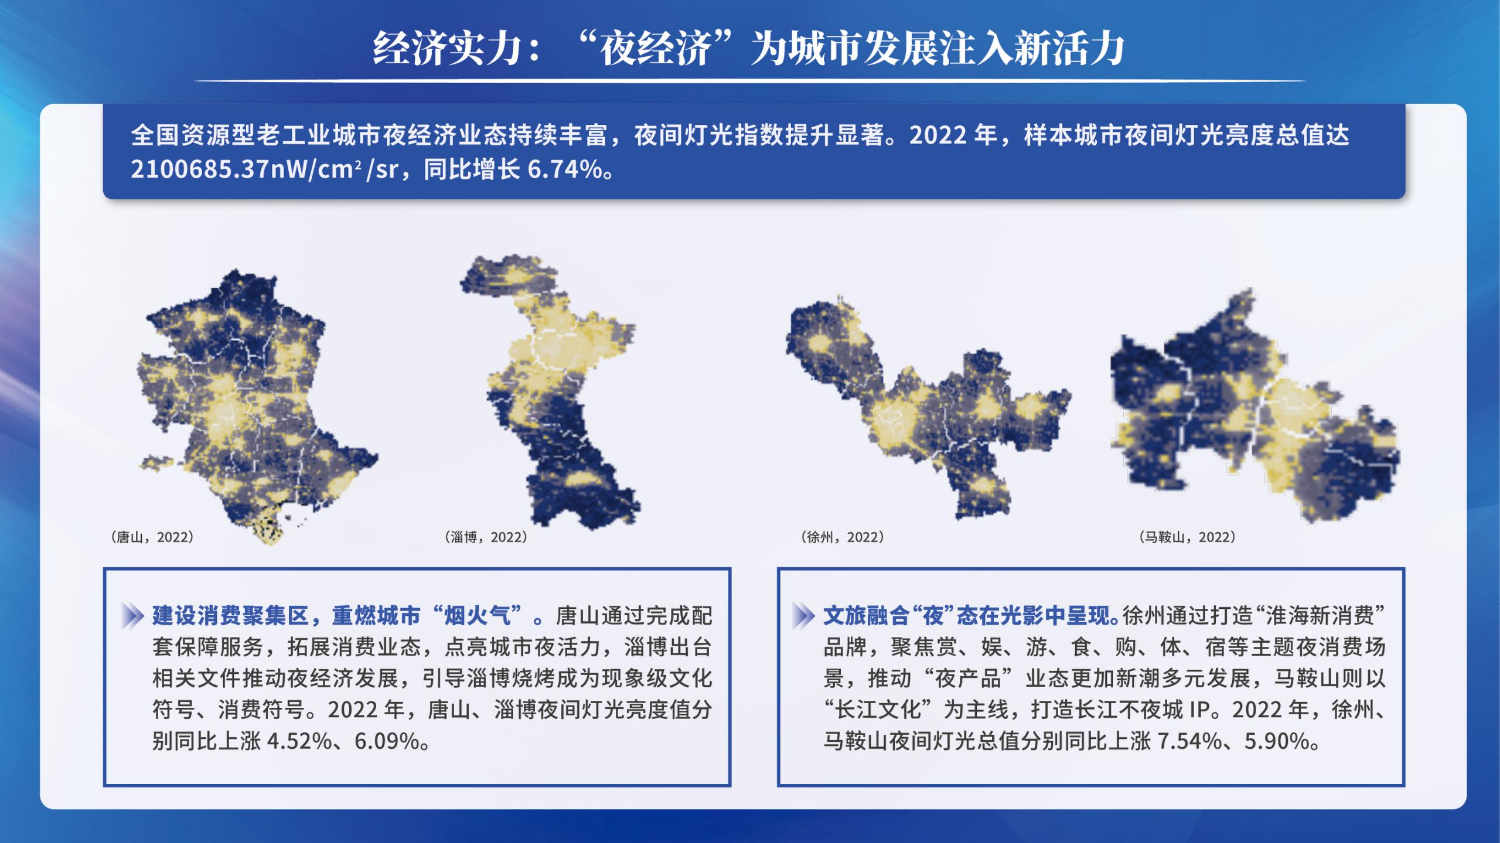 06201503中国资源型城市转型发展指数(1)_14.jpg